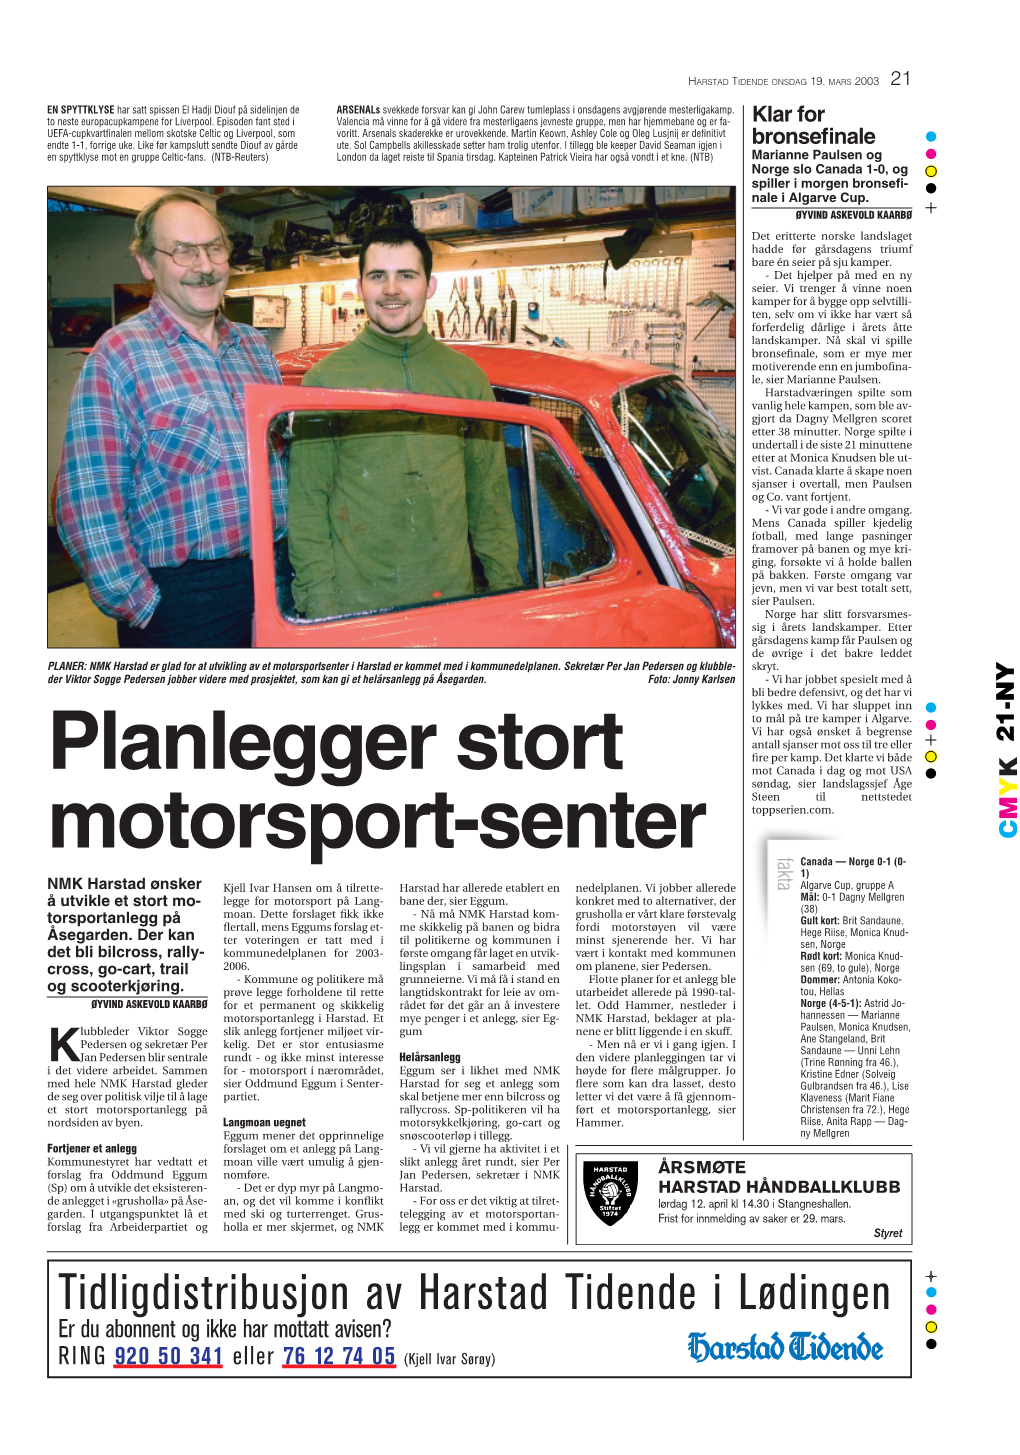 Planlegger Stort Motorsport-Senter